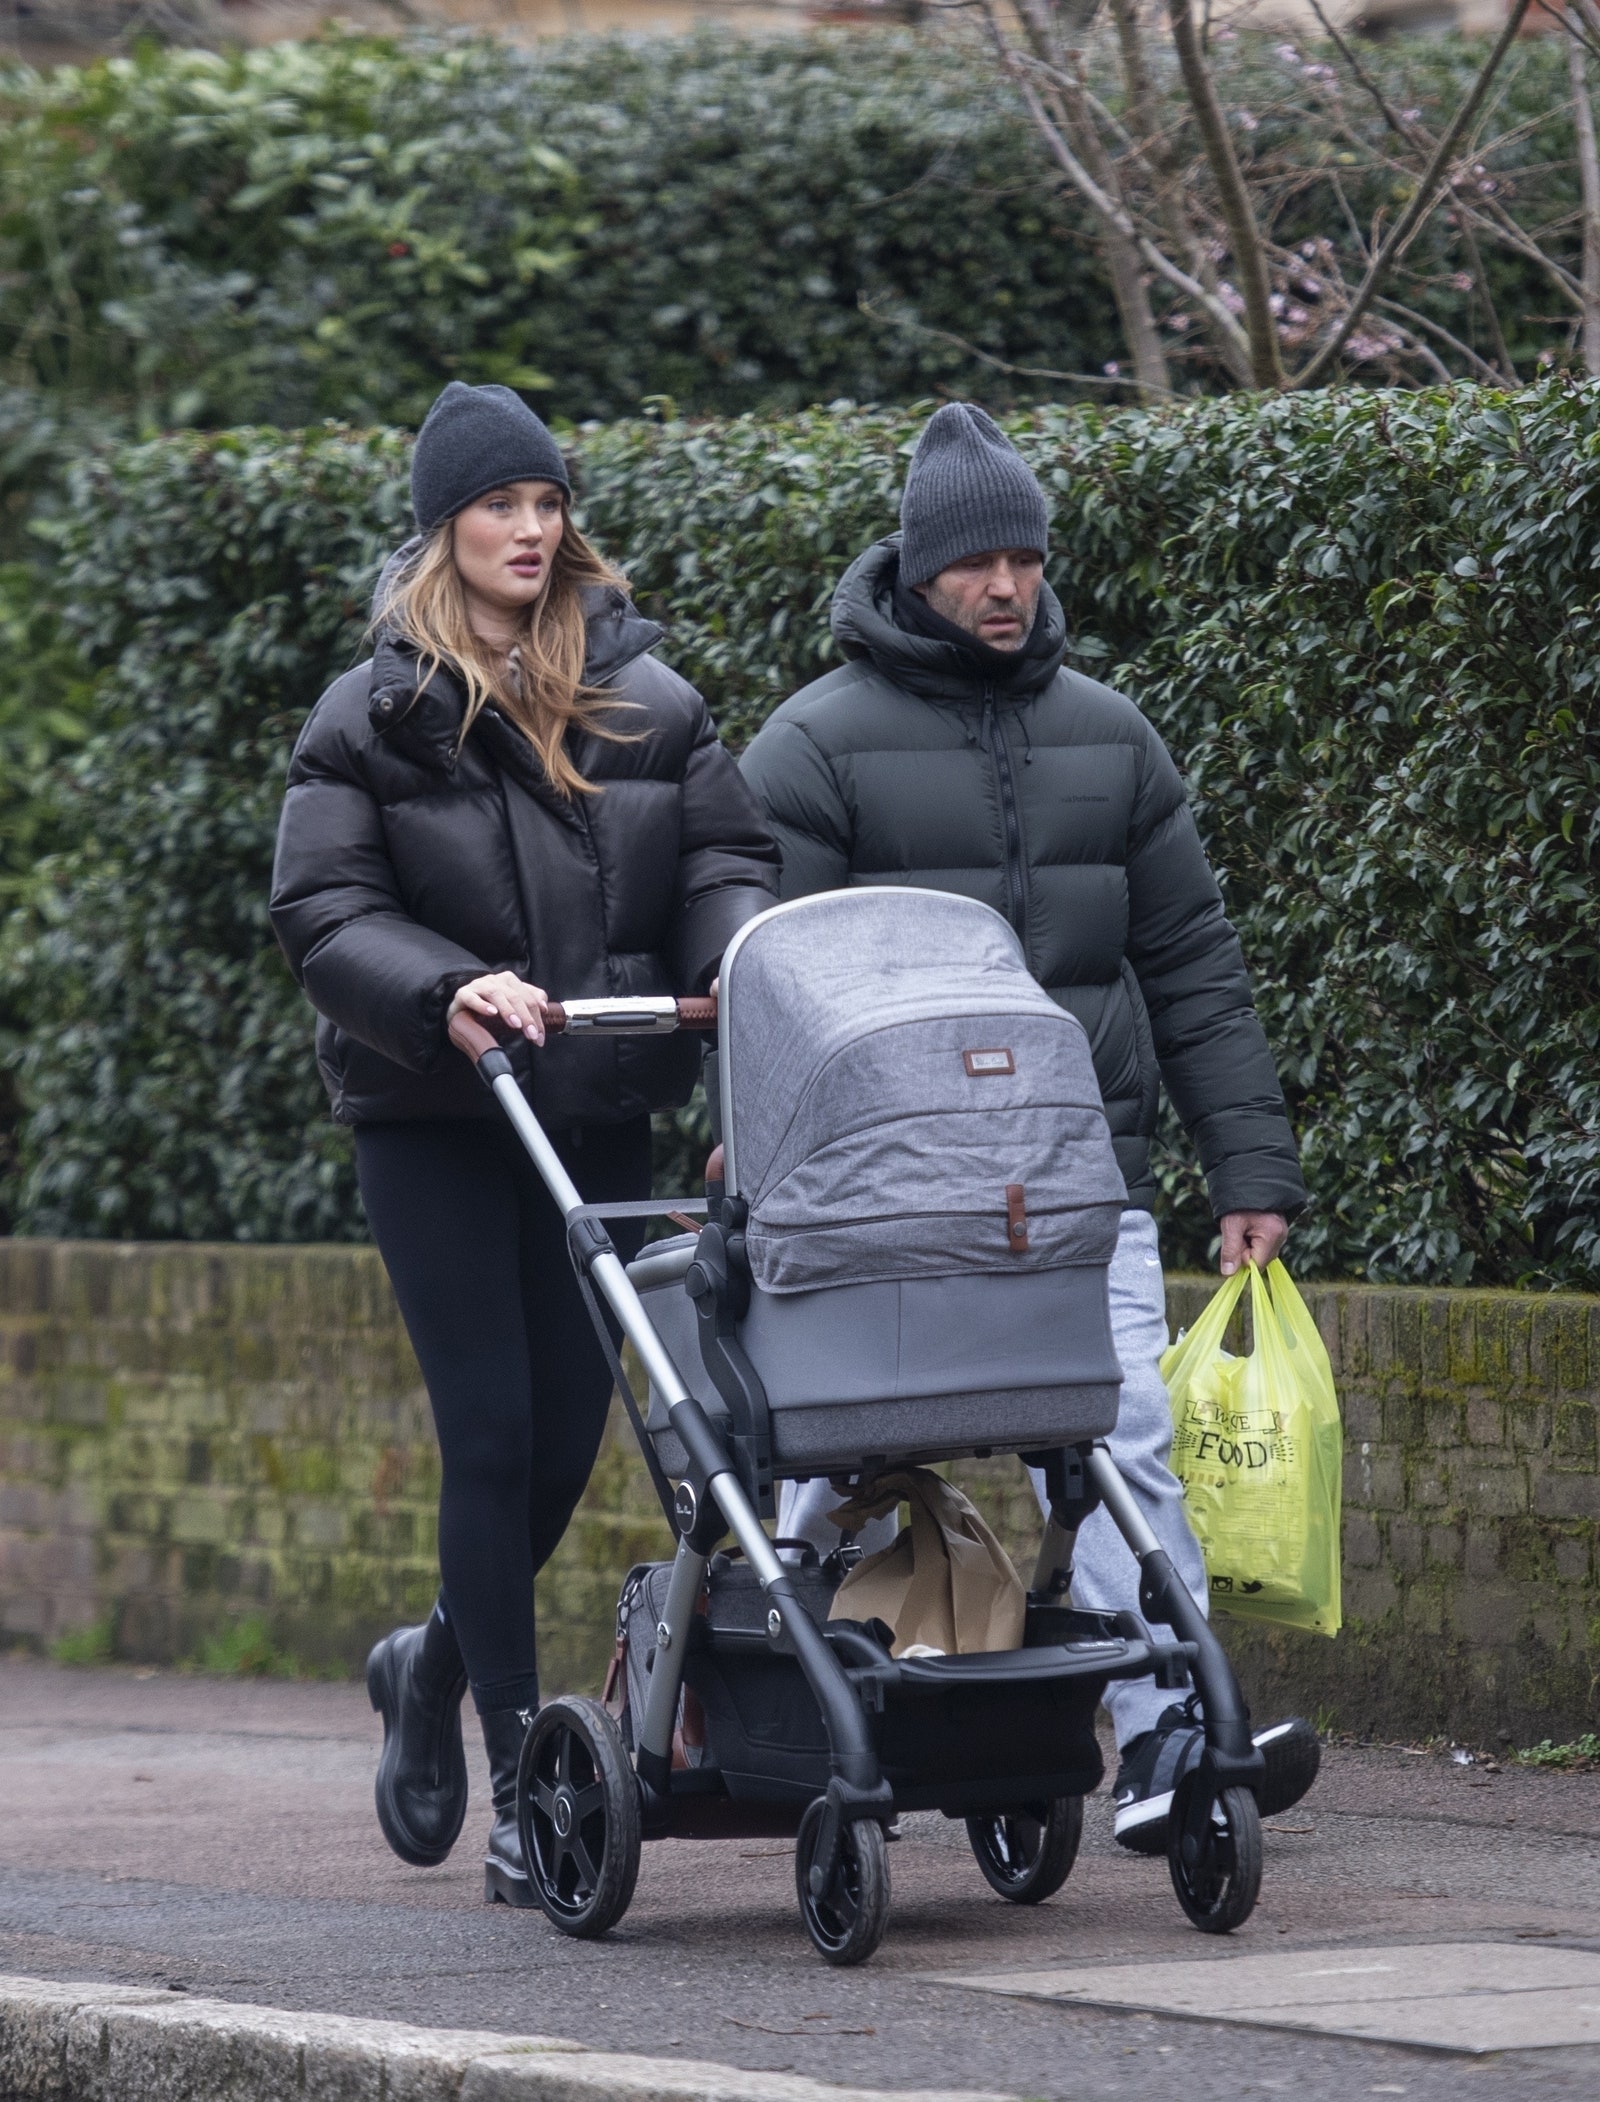 Появились первые фото Джейсона Стэтема и Рози ХантингтонУайтли на прогулке с новорожденным